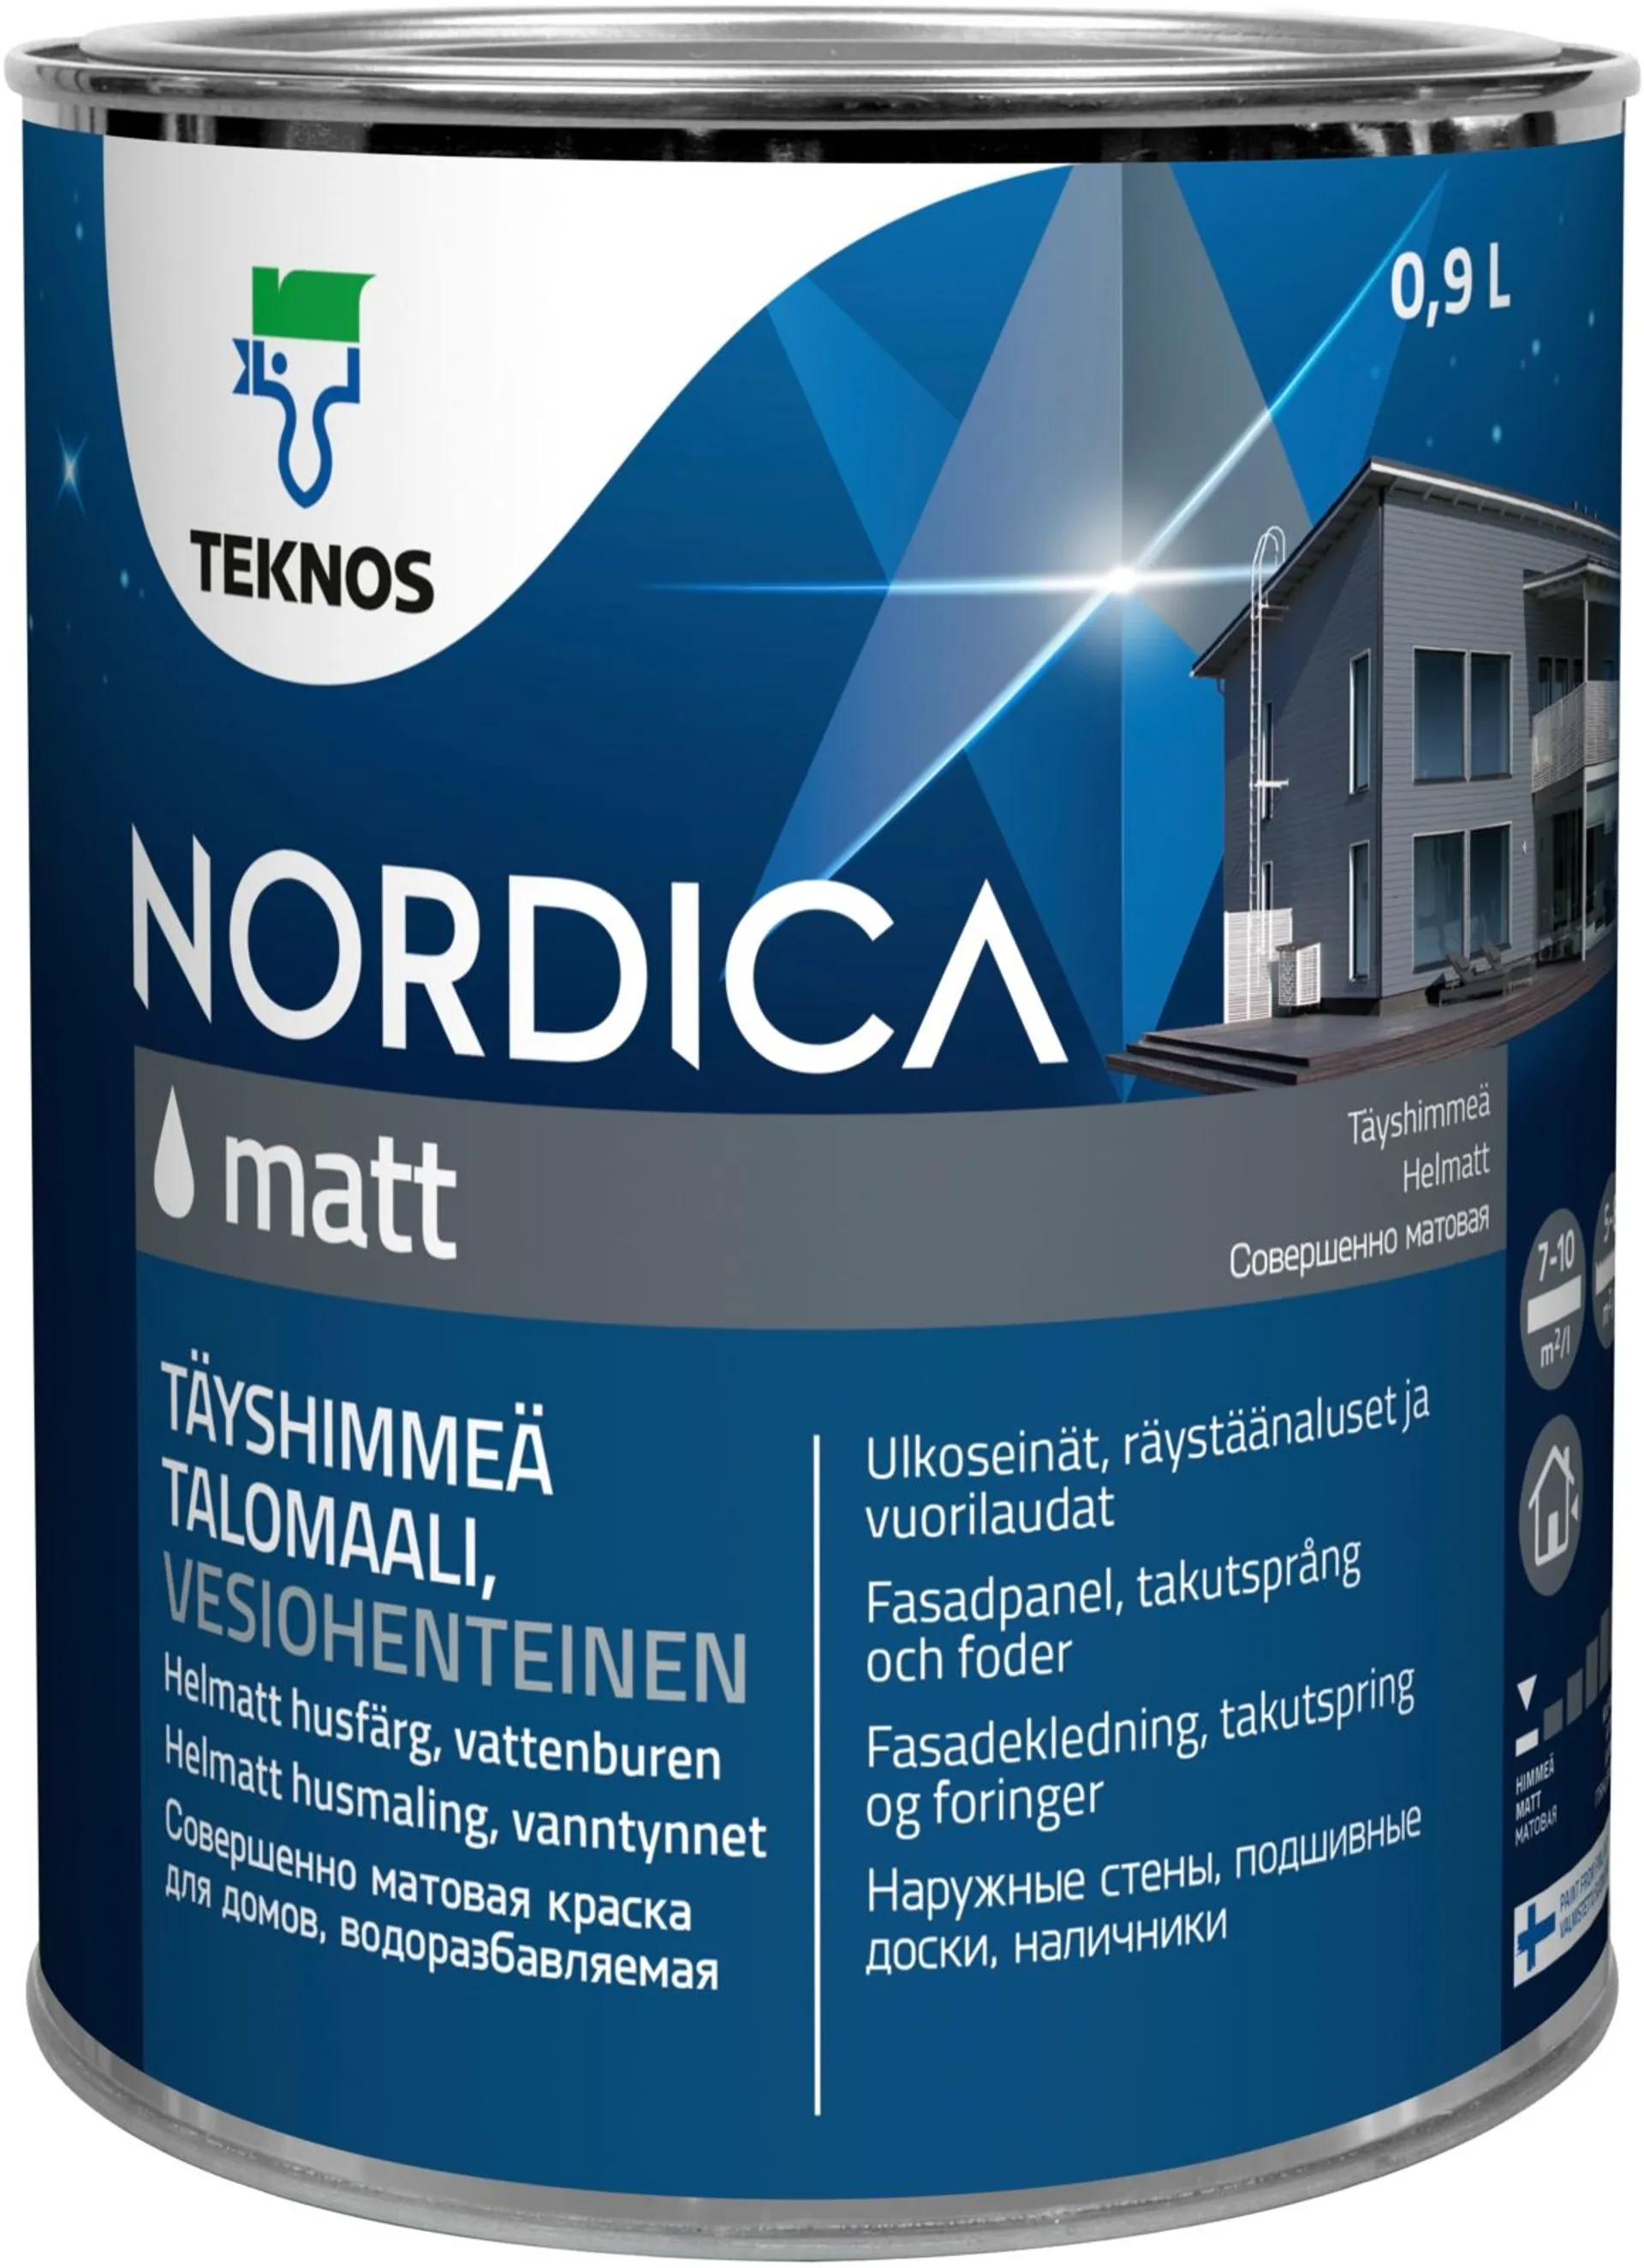 Teknos talomaali Nordica Matt 0,9 l PM3 sävytettävä täyshimmeä